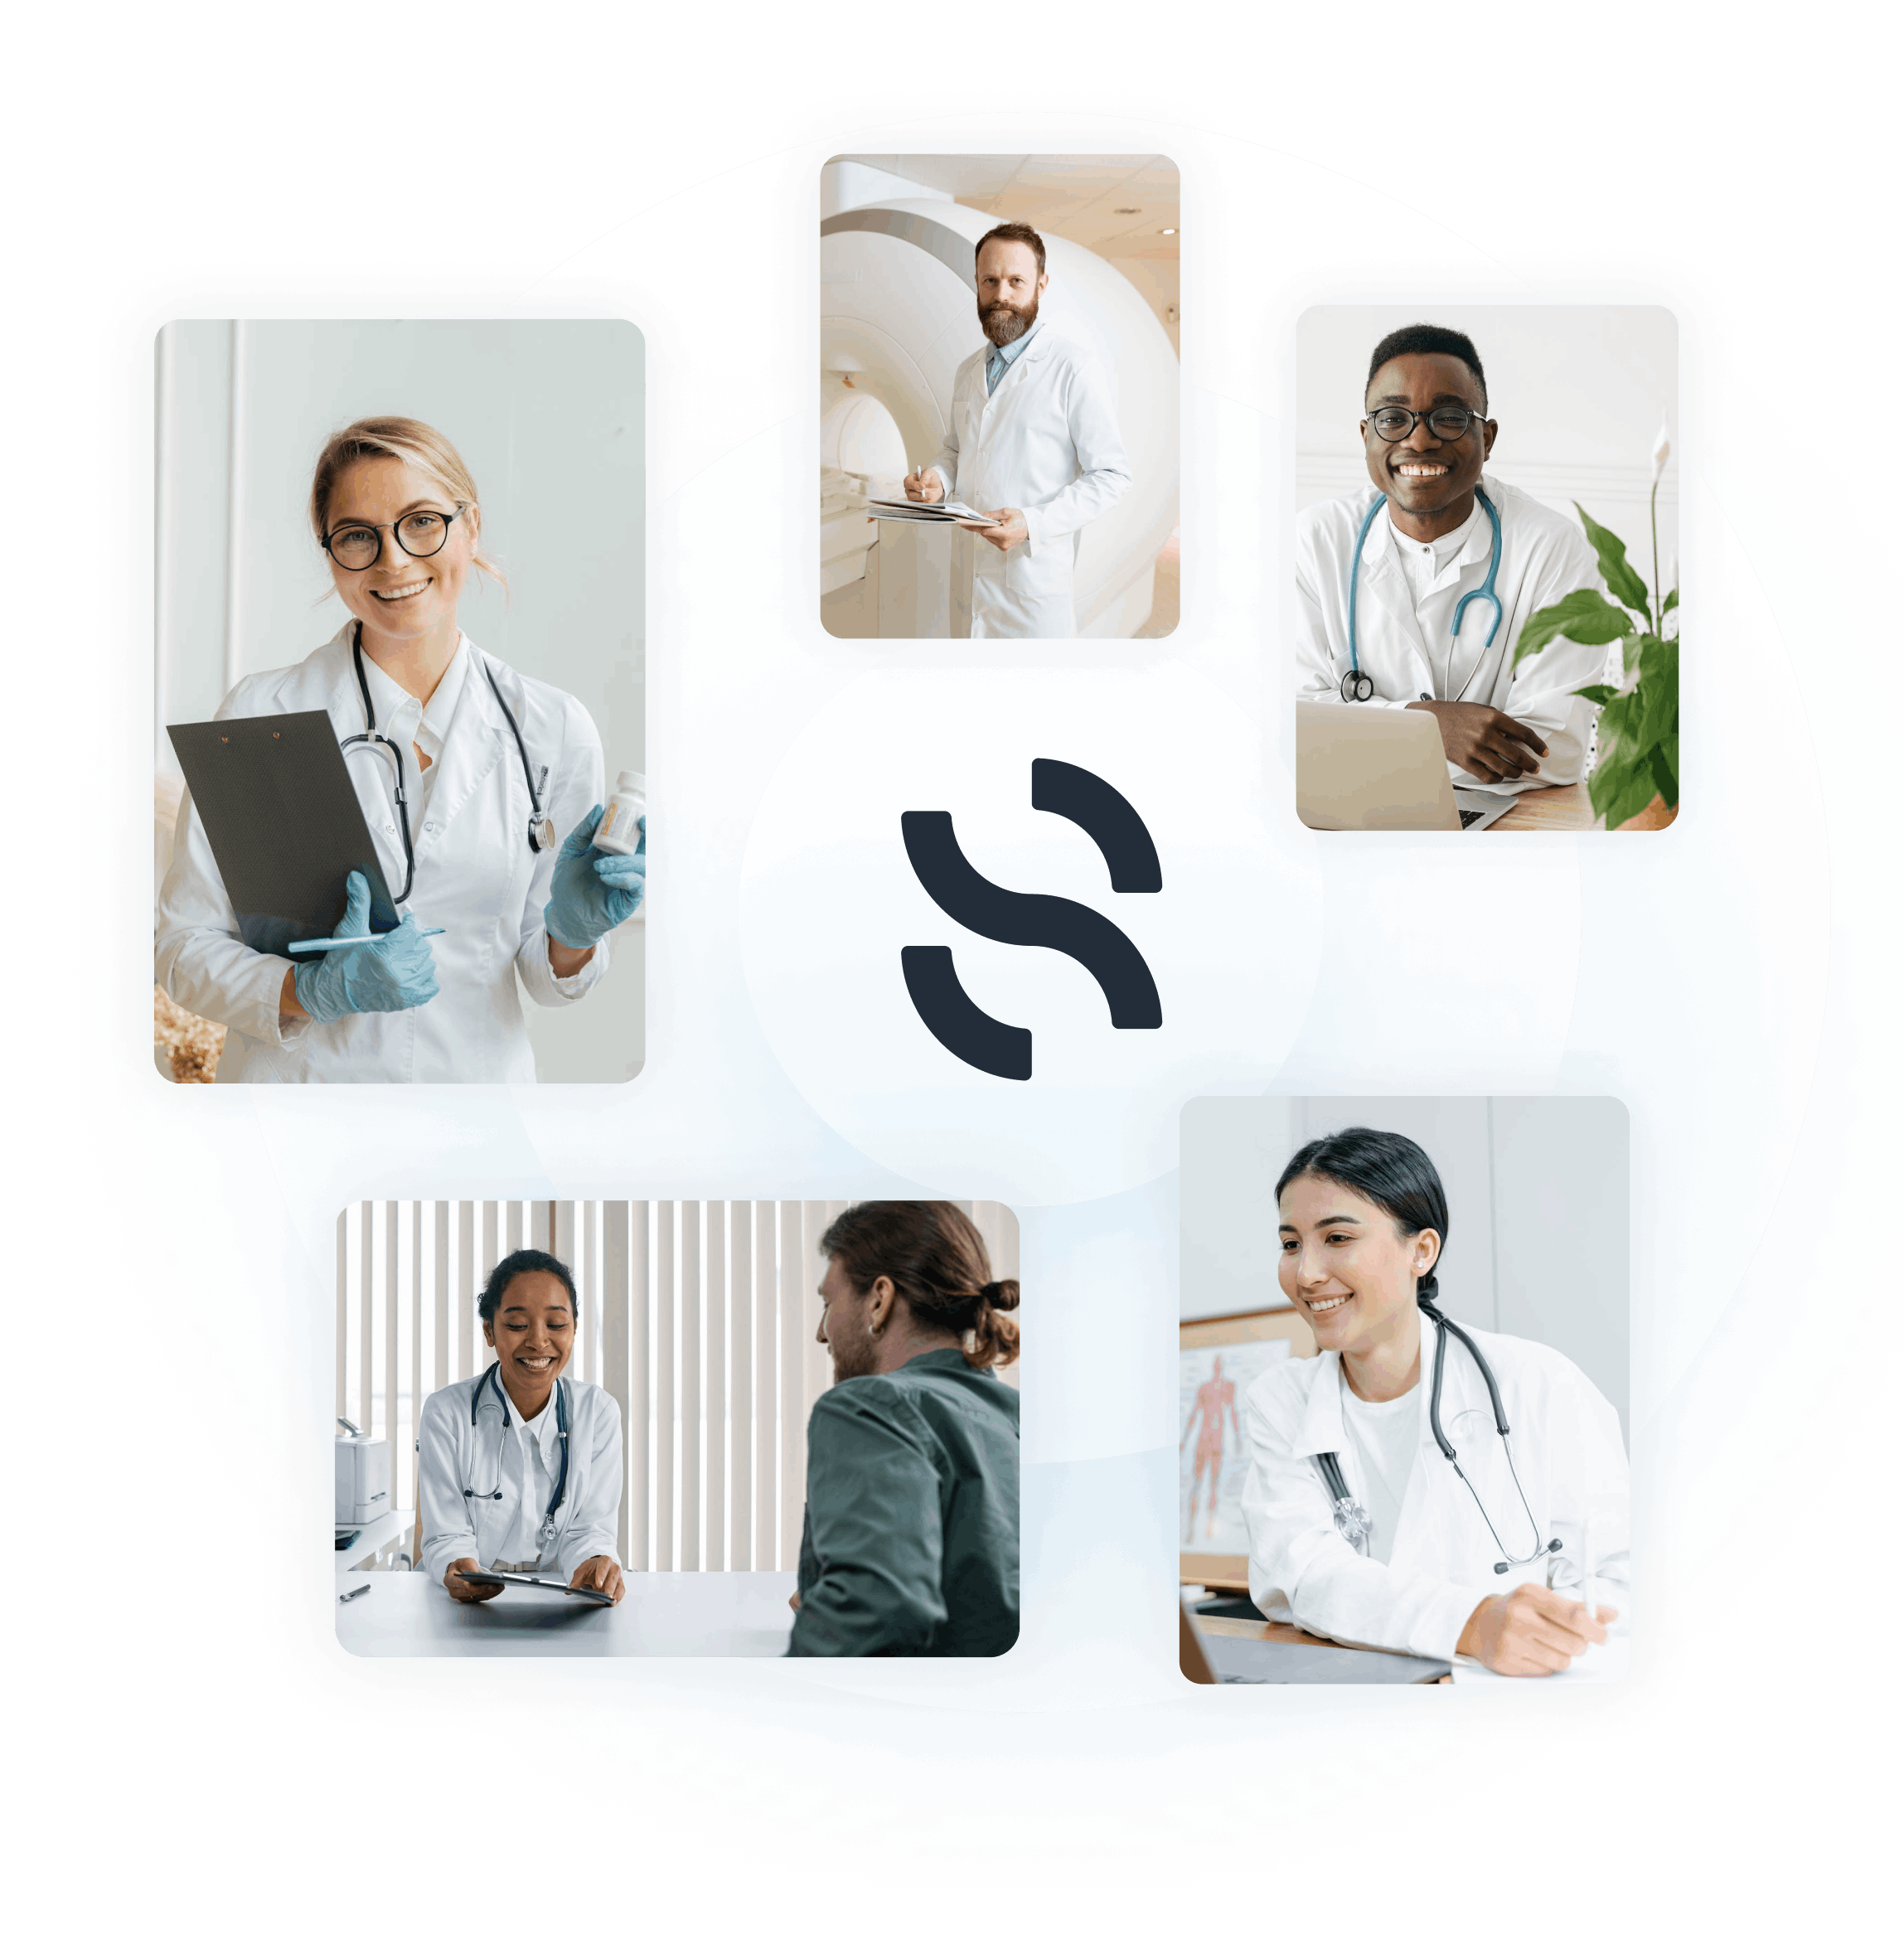 synapse medicine s'adresse à tous les acteurs du système de santé : éditeurs de logiciels, hospitaliers, aux professionnels de santé libéraux et aux patients.